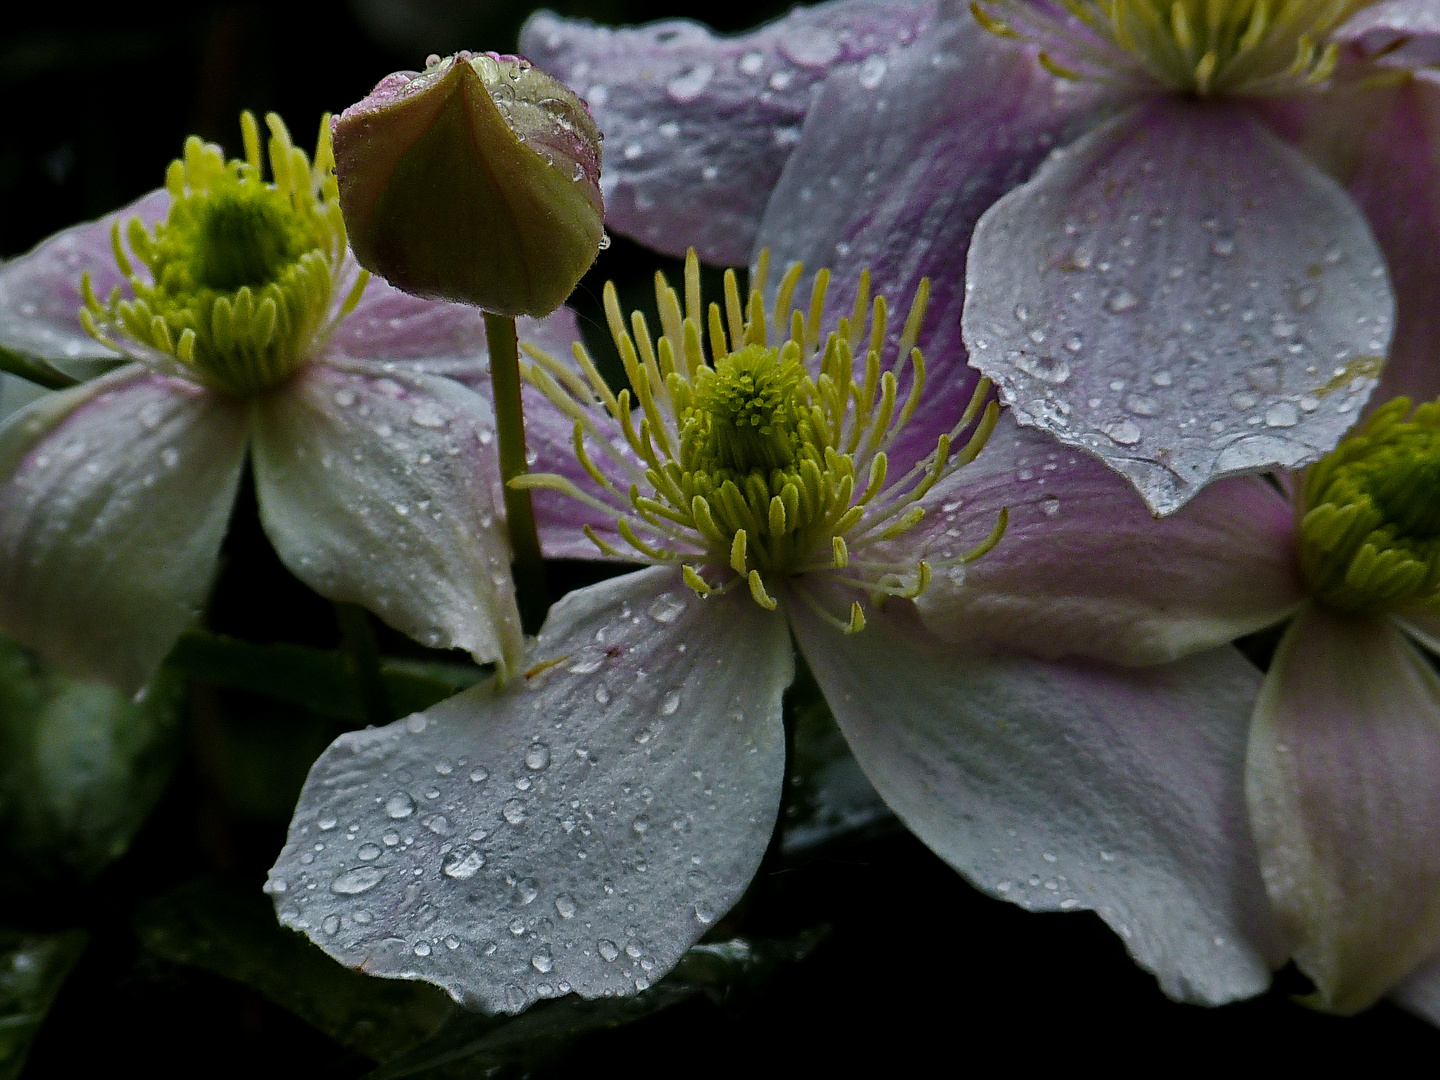 Mittwochsblümchen im Regen